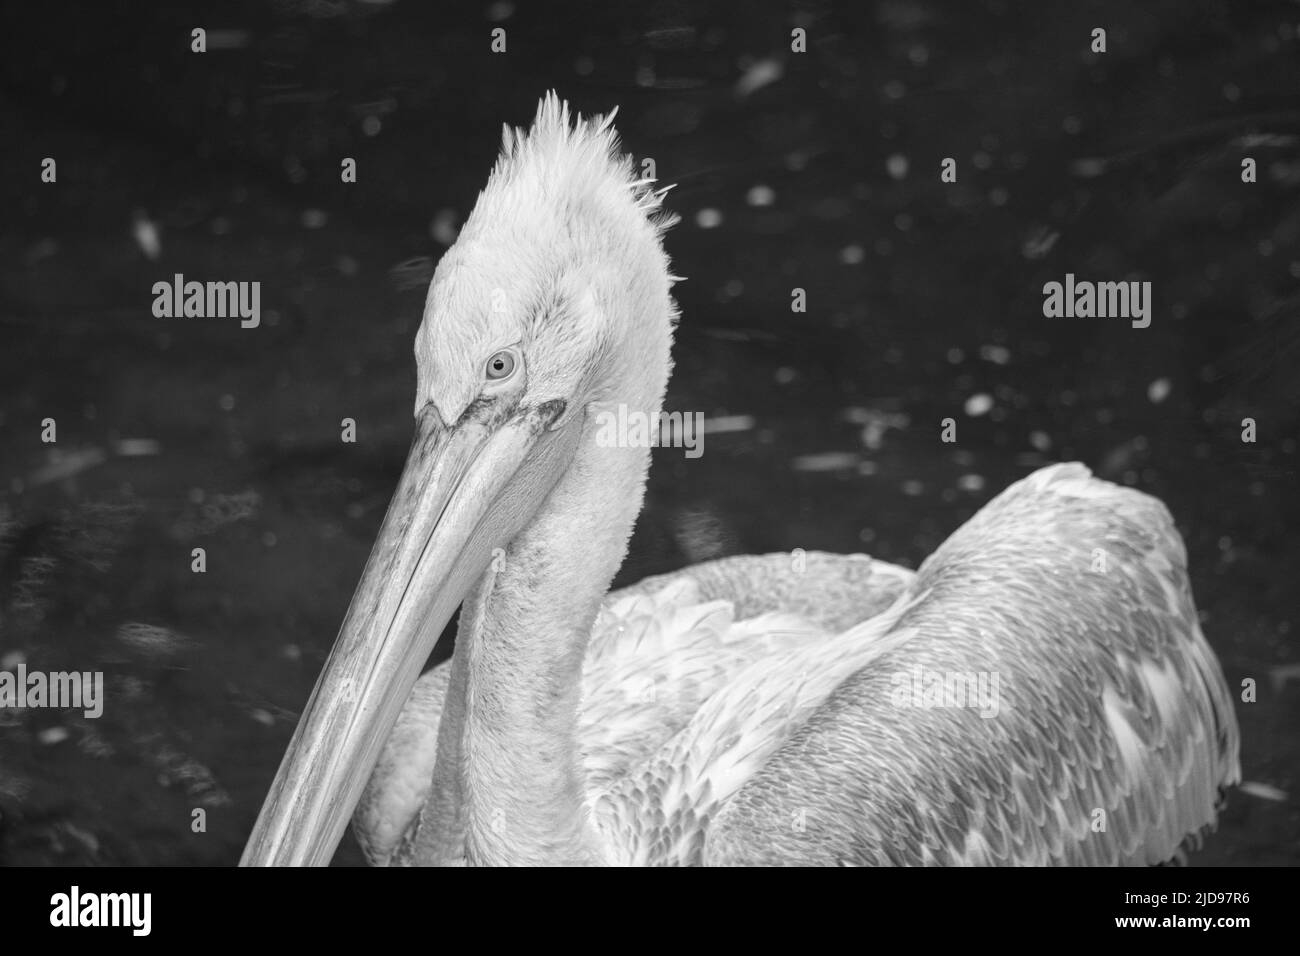 Pelican bianco e nero, nuoto in acqua. Piumaggio grigio bianco, becco grande, ad un grosso uccello marino. Foto animale Foto Stock